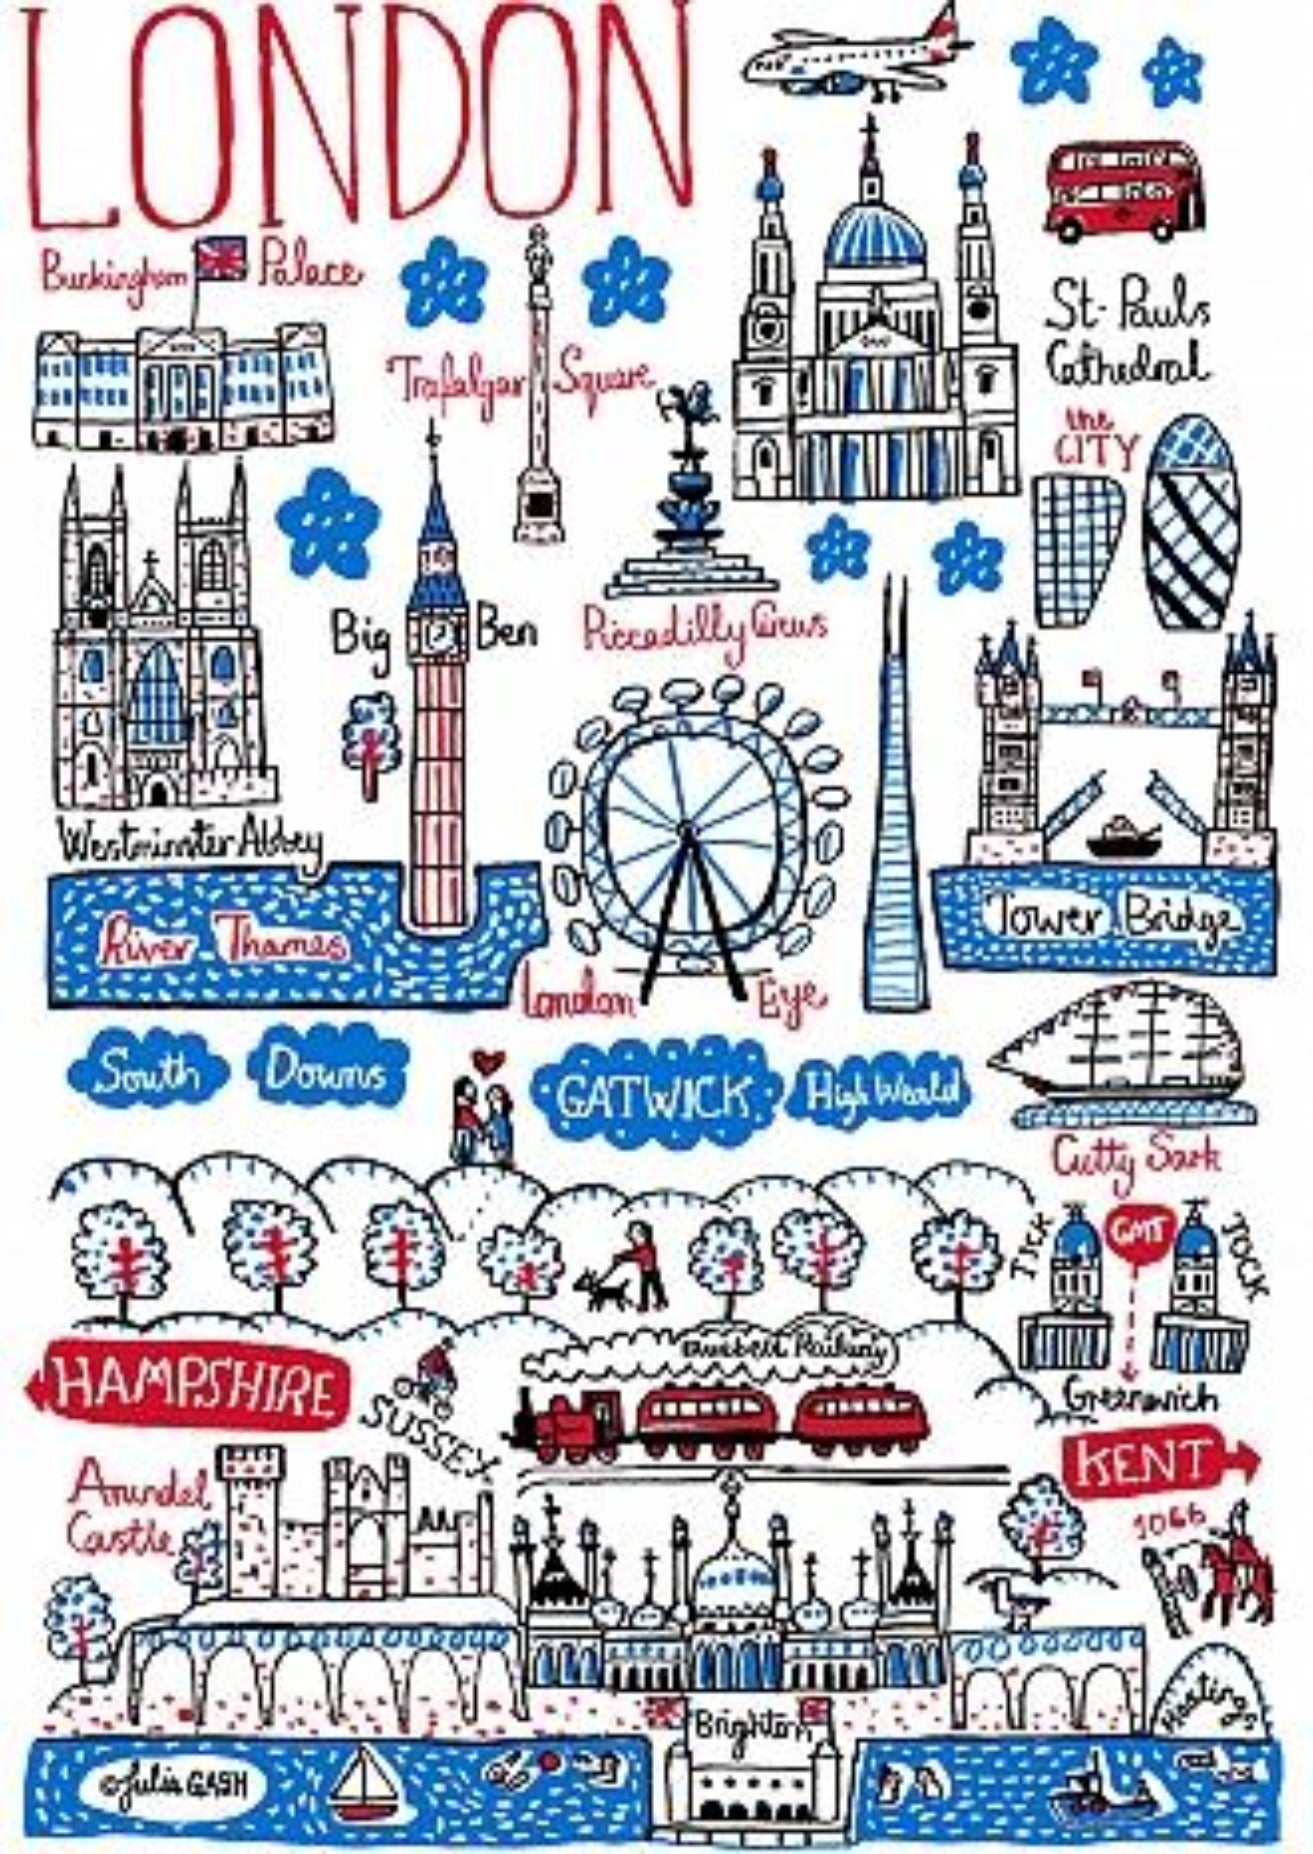 London South Postcard - Julia Gash